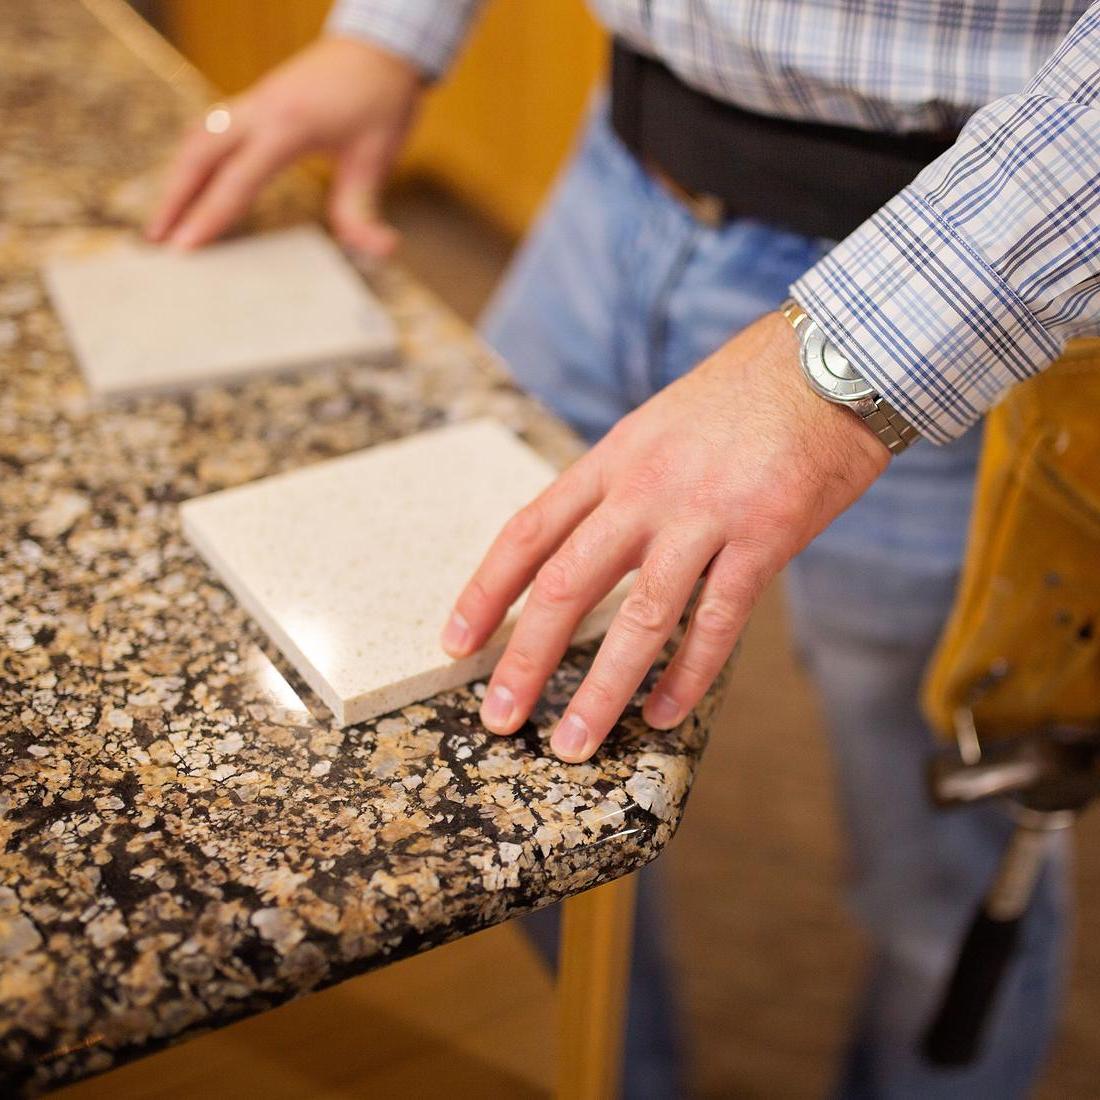 Granite samples on a countertop.